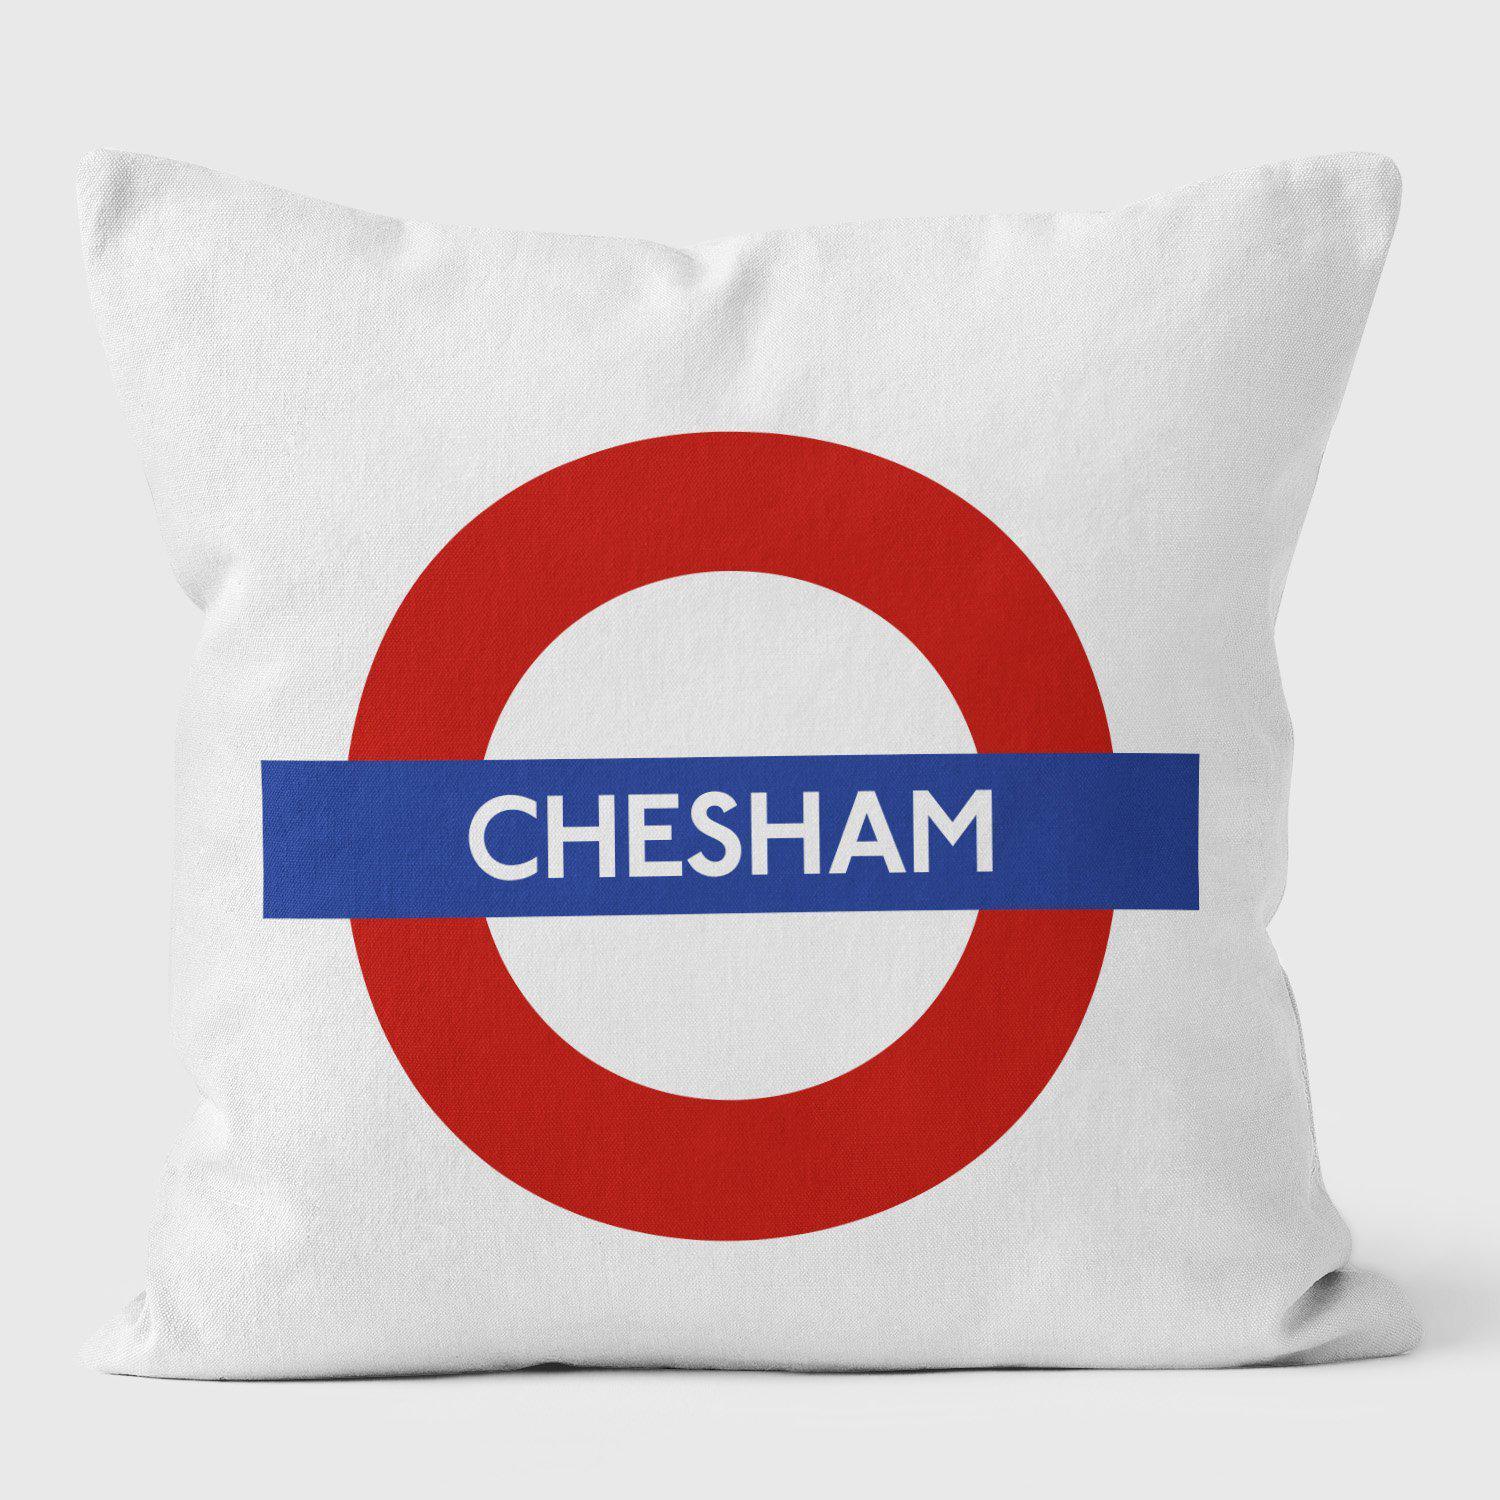 Chesham London Underground Tube Station Roundel Cushion - Handmade Cushions UK - WeLoveCushions